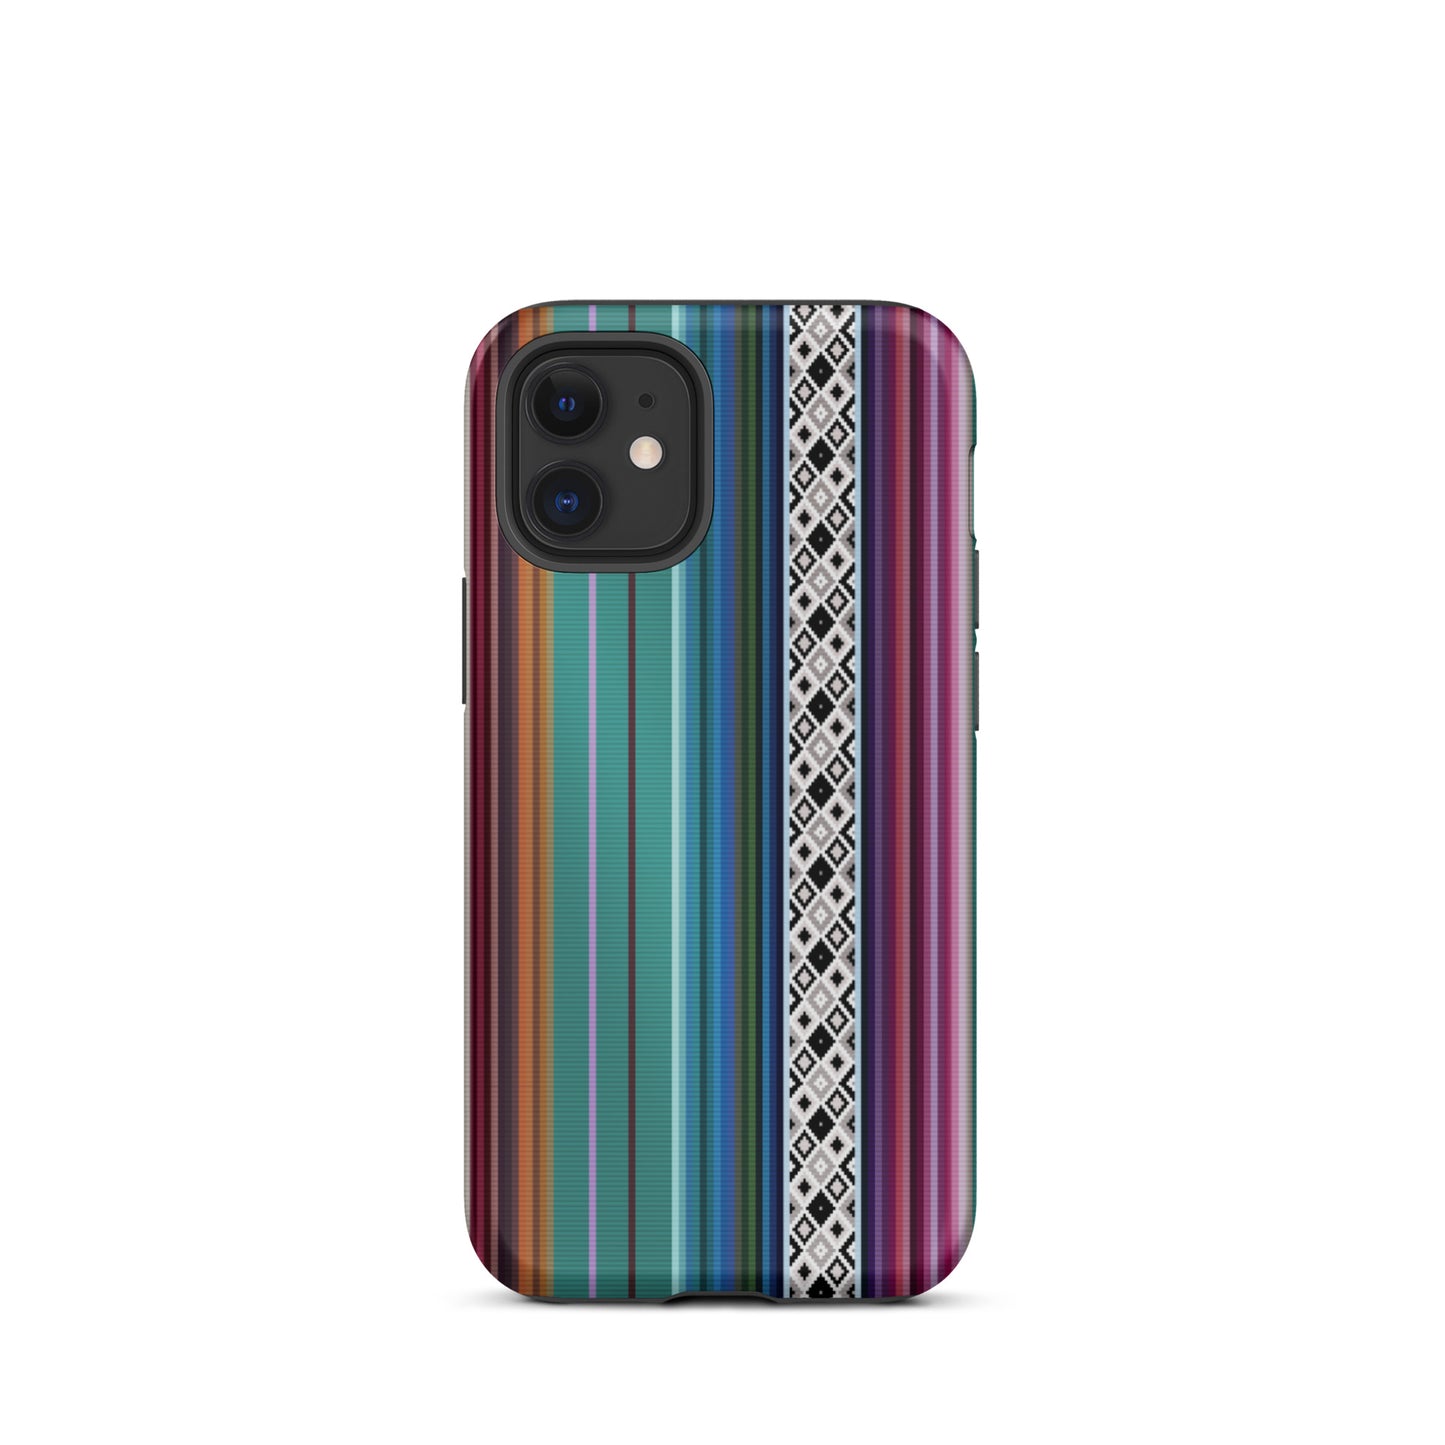 Mexican Aztec Tough iPhone 12 mini case